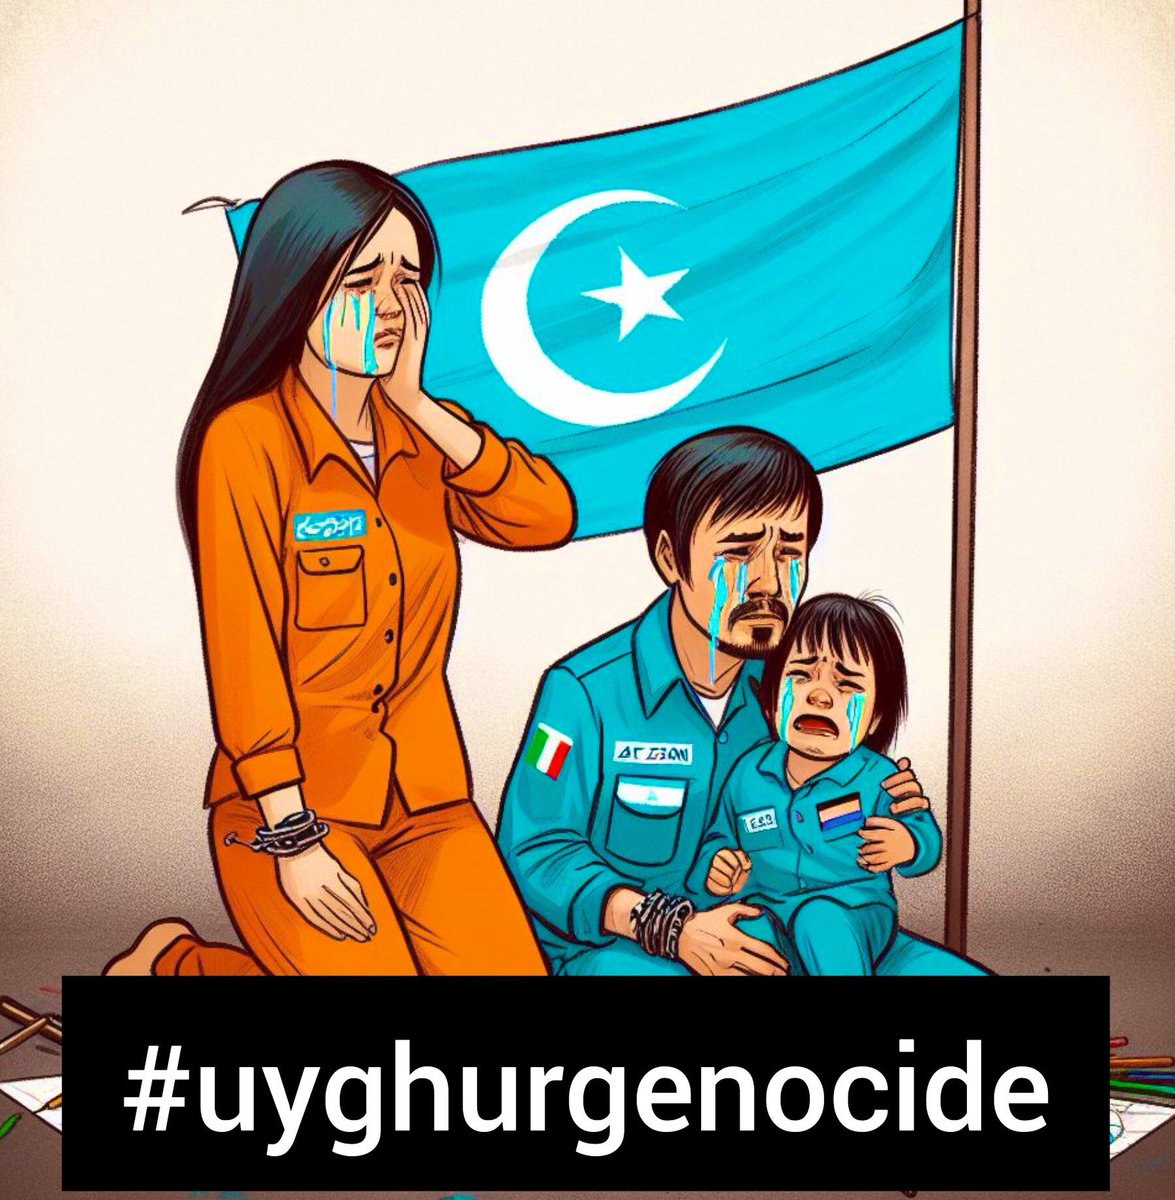 Bir diğer kanayan yaramız, uygur kardeşlerimizin sesi olalım. #uyghurgenocide